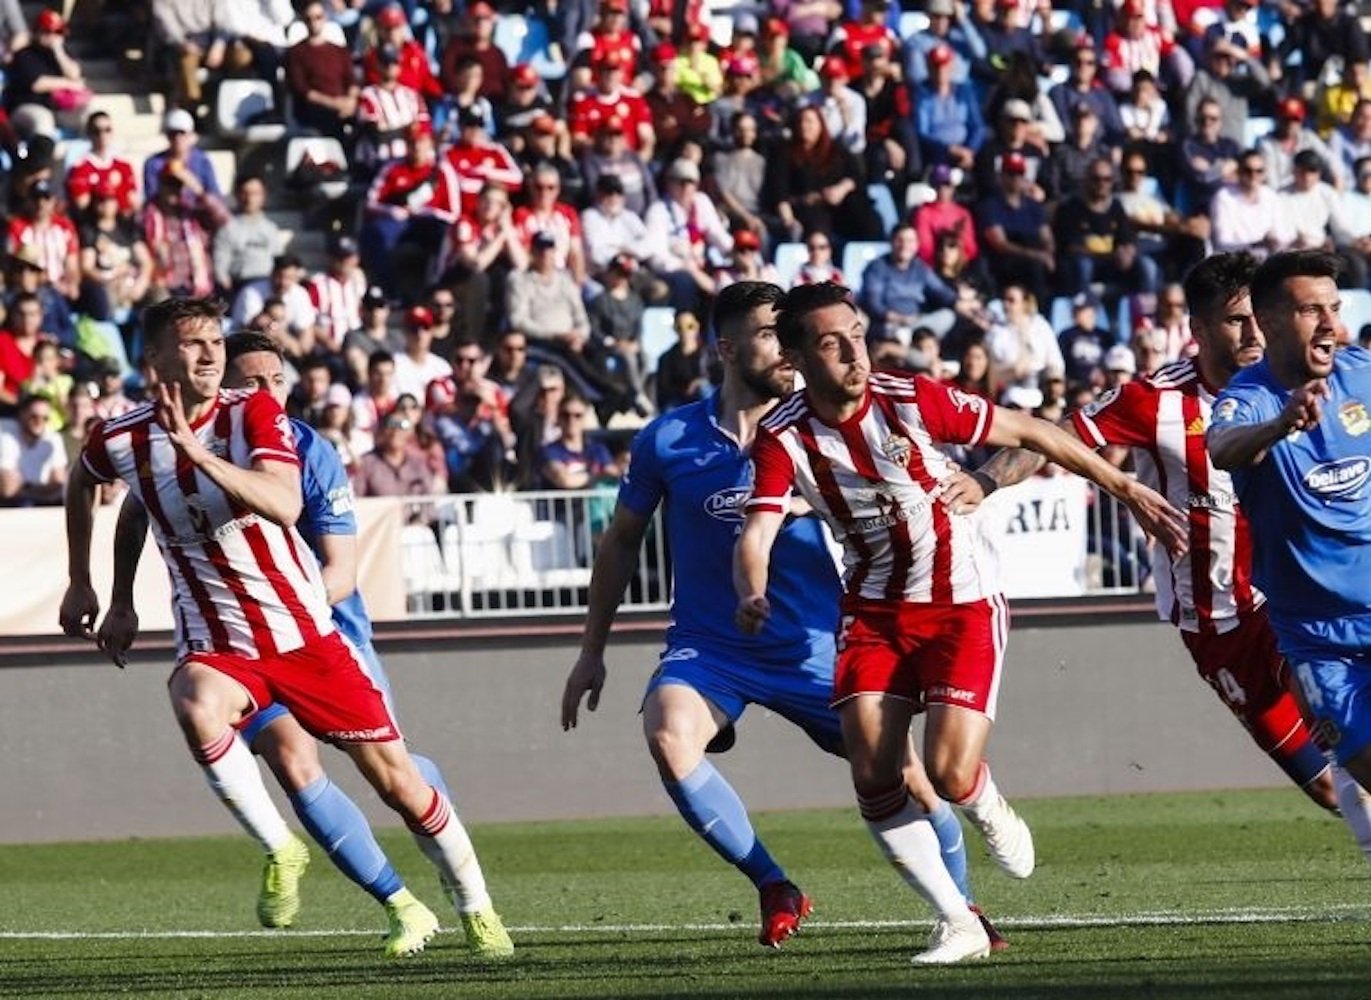 El rival del Girona al play-off, l'Almeria, confirma un positiu per coronavirus